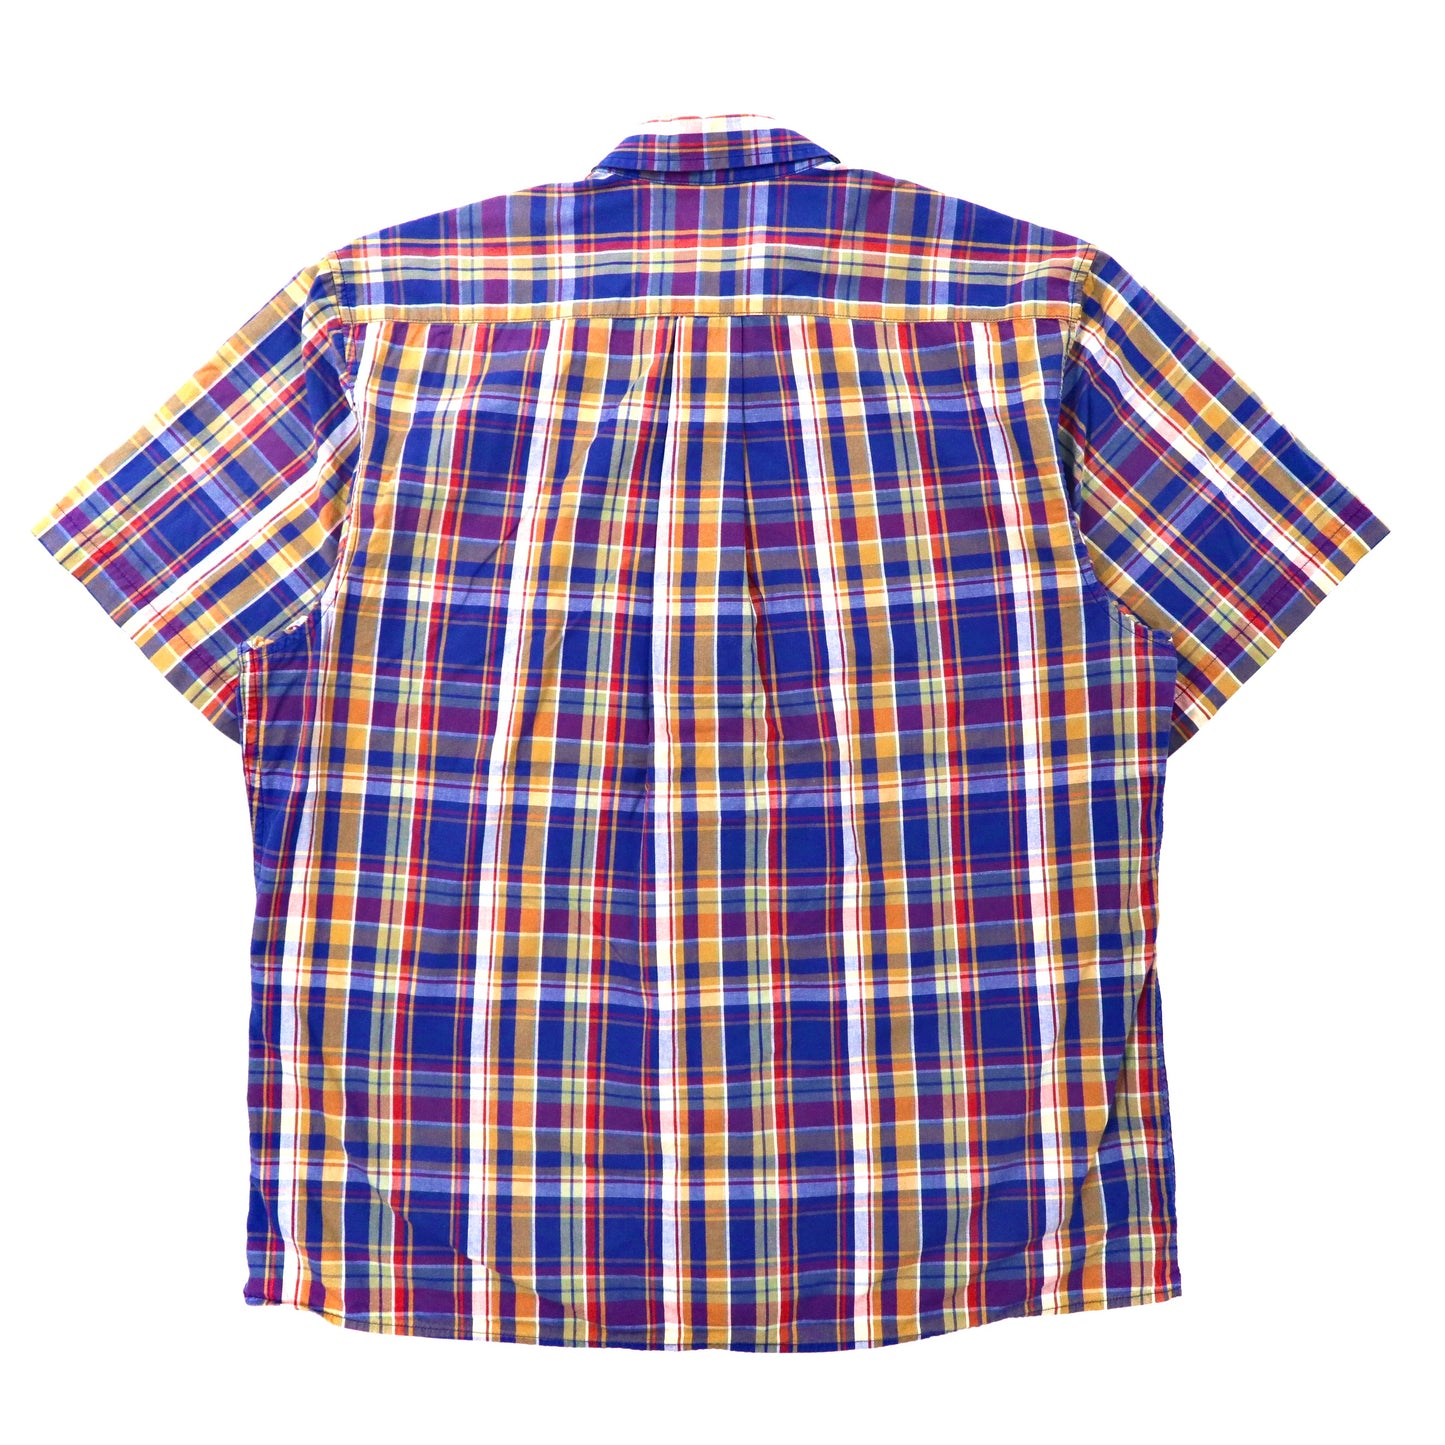 CHAPS 半袖ボタンダウンシャツ LL ブルー チェック コットン ワンポイントロゴ刺繍